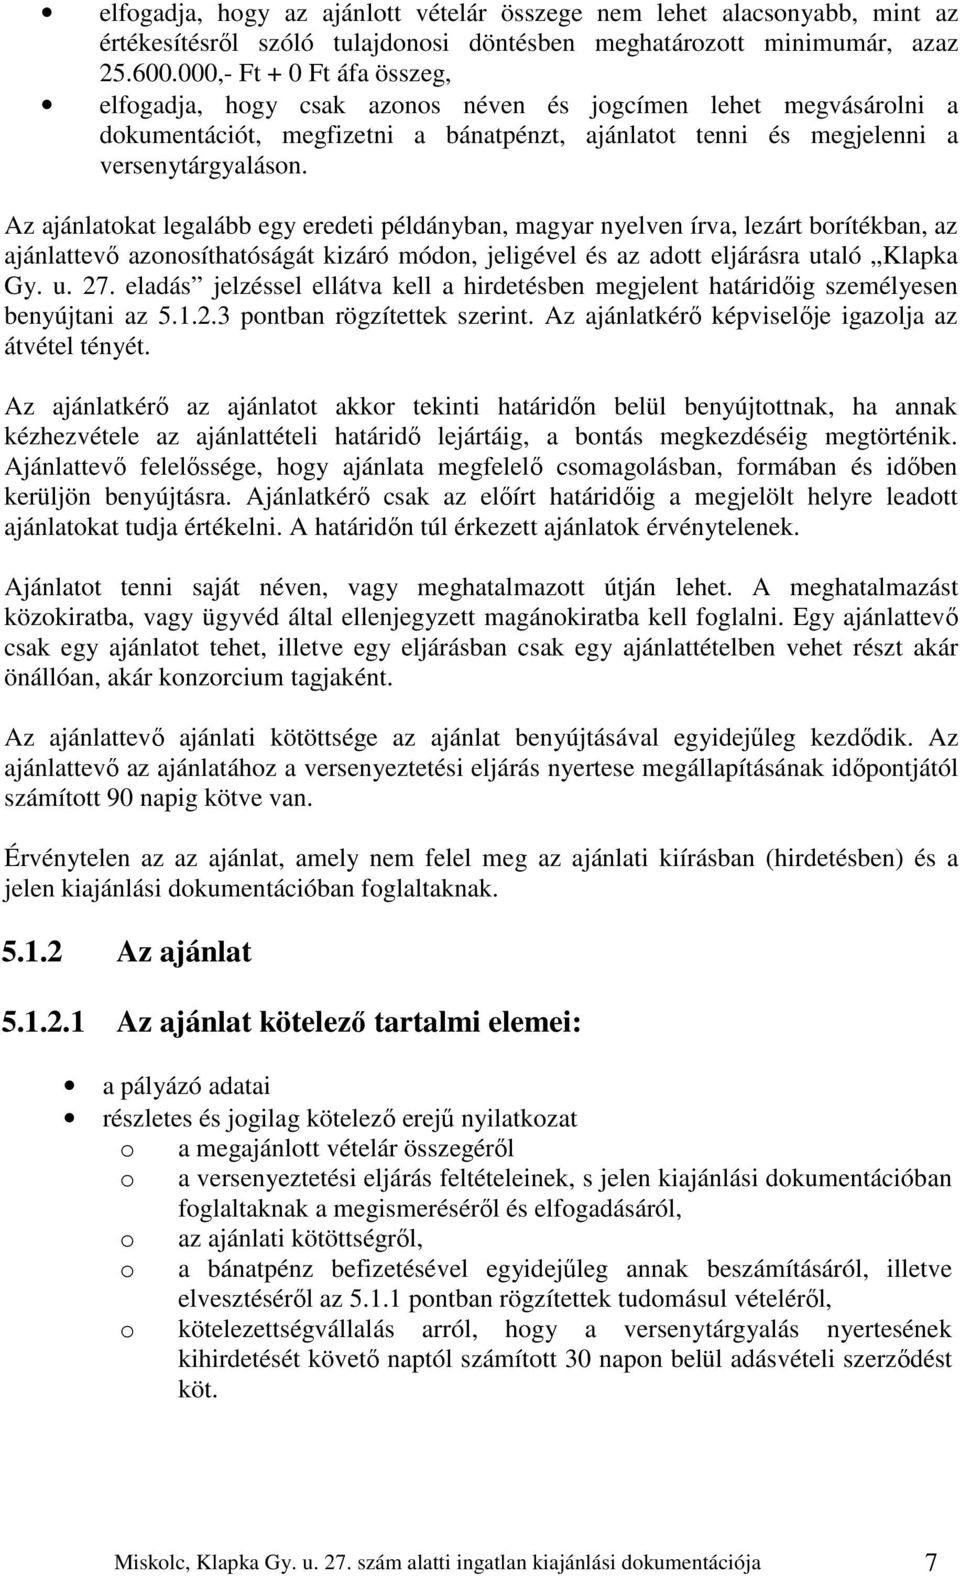 Az ajánlatokat legalább egy eredeti példányban, magyar nyelven írva, lezárt borítékban, az ajánlattevő azonosíthatóságát kizáró módon, jeligével és az adott eljárásra utaló Klapka Gy. u. 27.